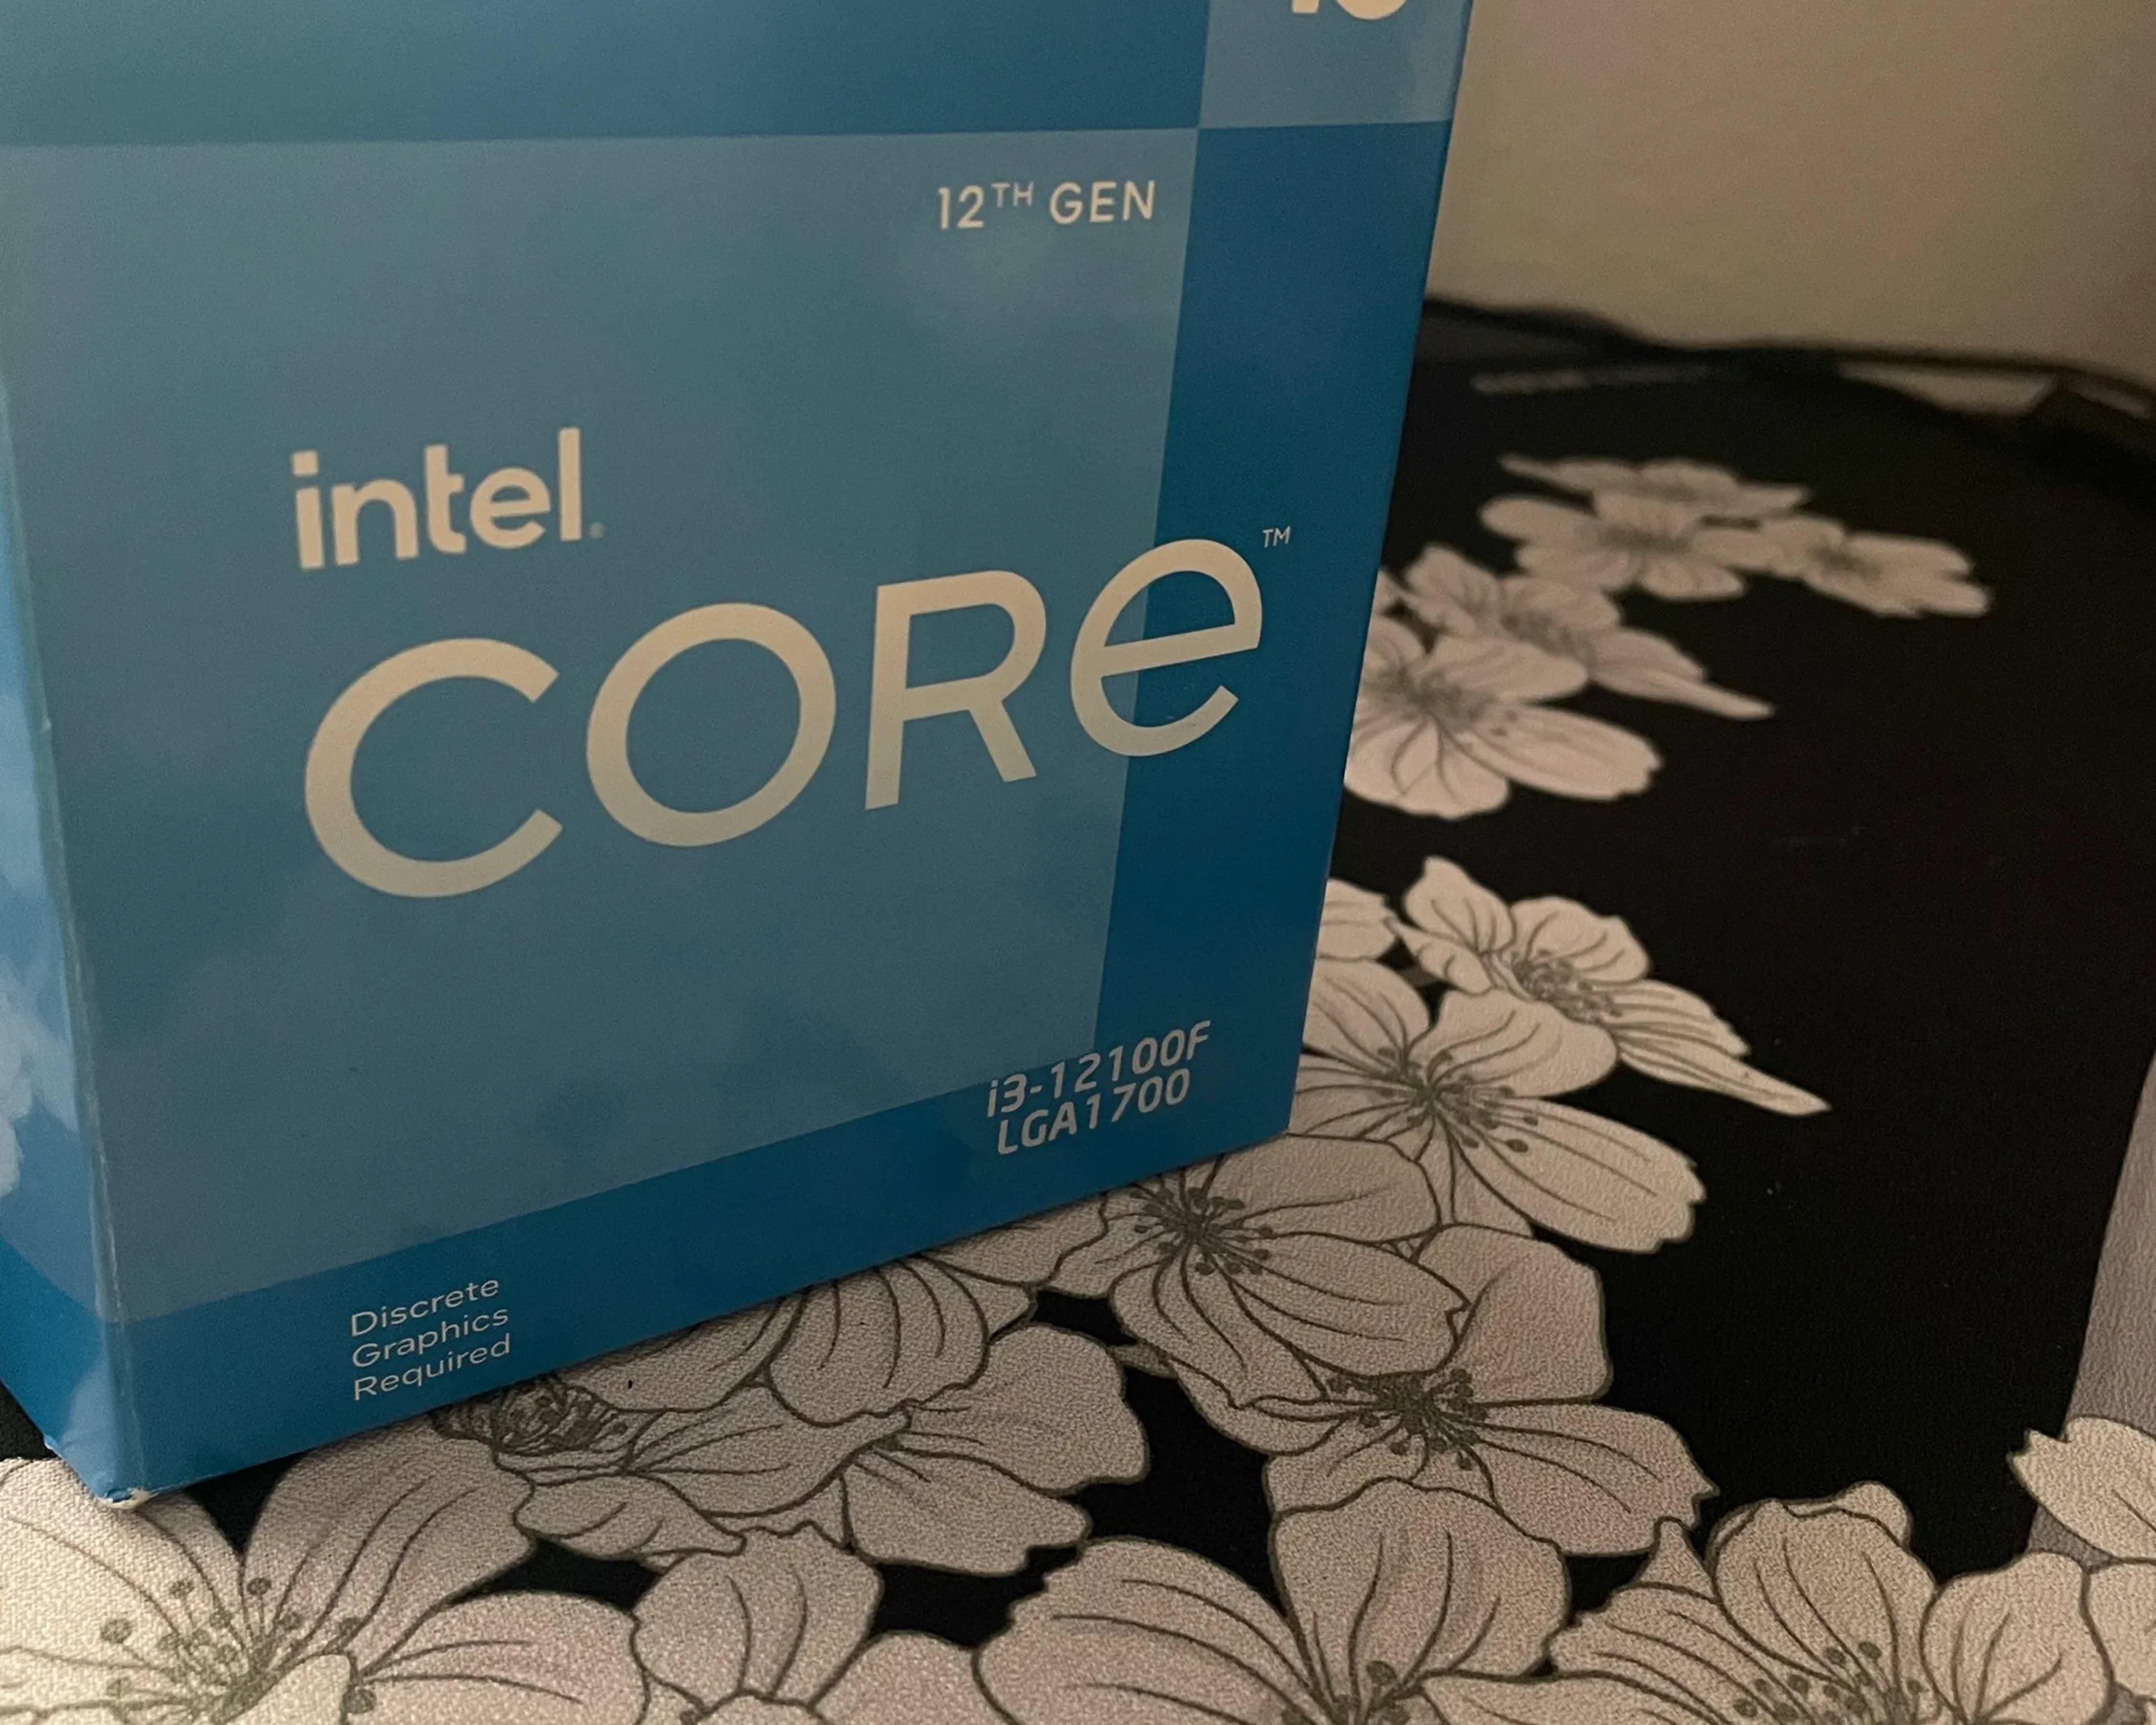 Intel Core i3-12100f CPU